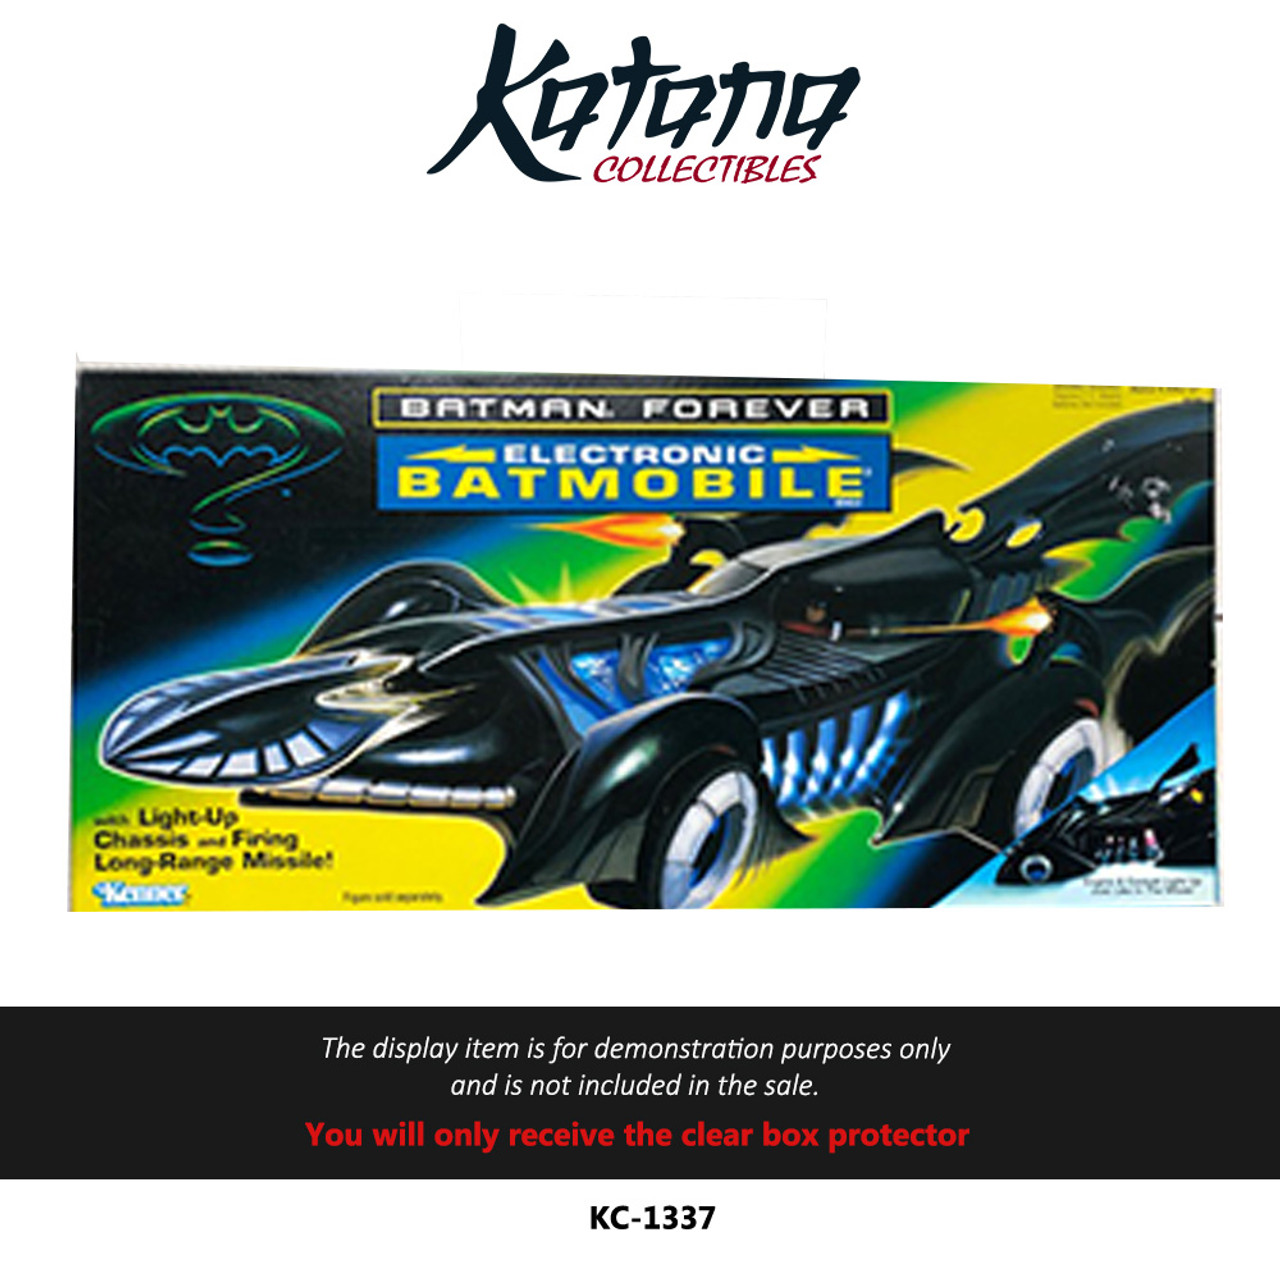 Katana Collectibles Protector For Kenner Batman Forever - Electronic Batmobile